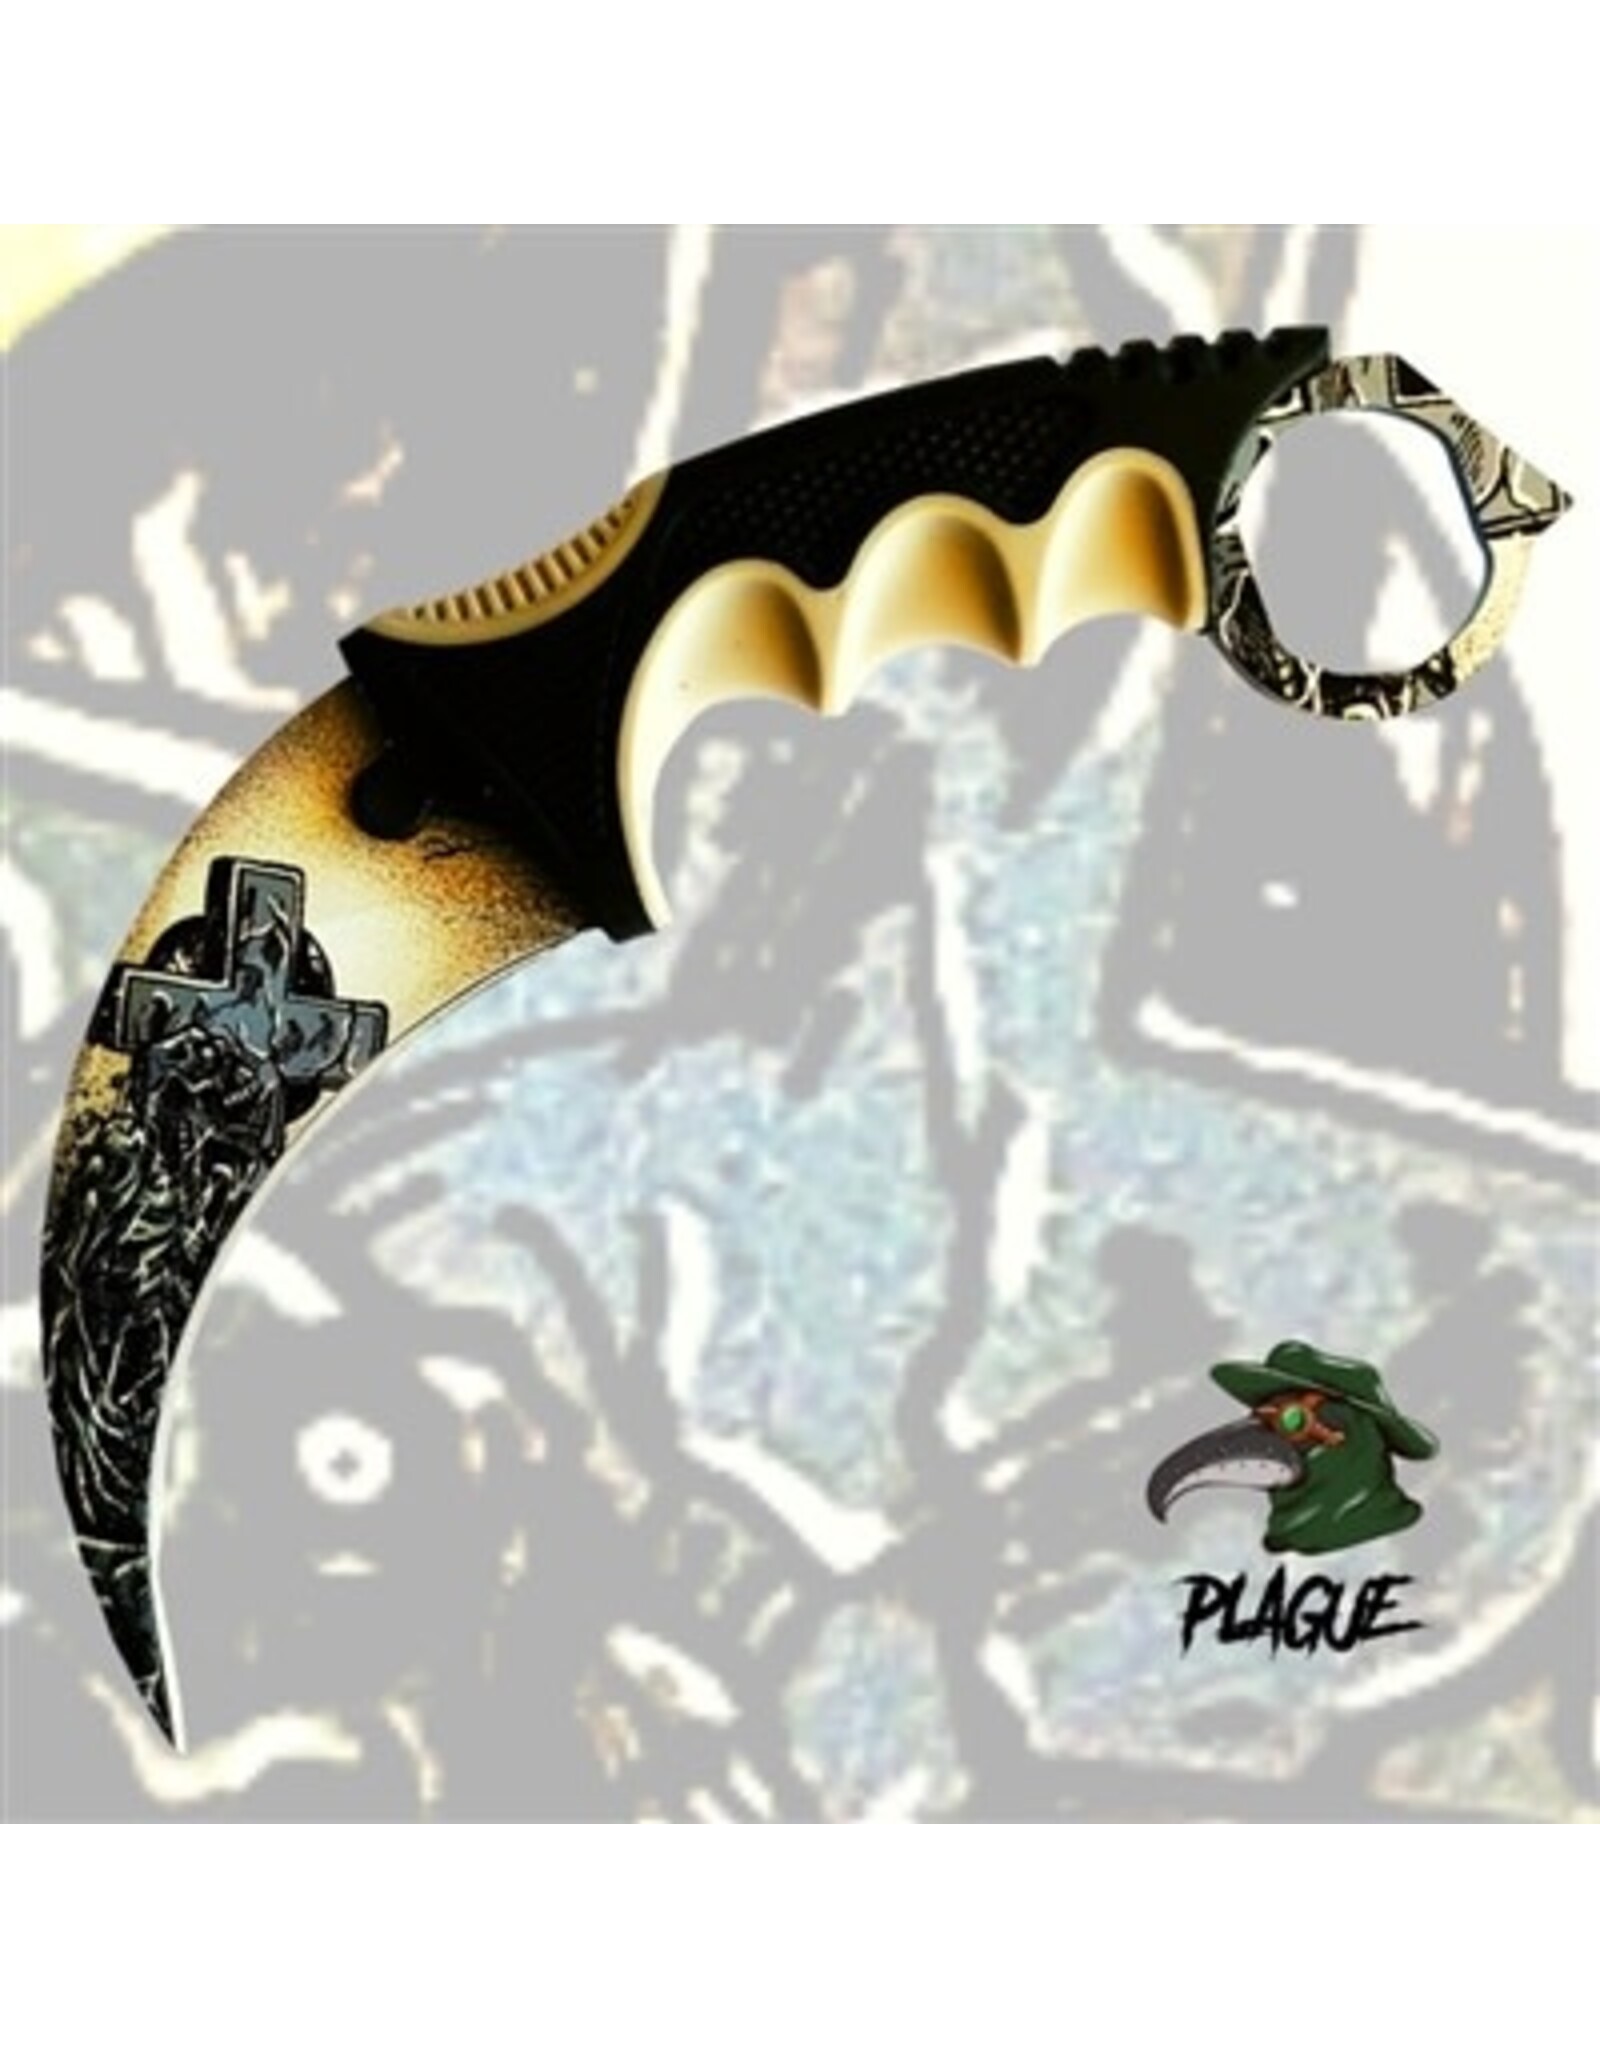 Plague Karambit Knife - The Dead Shall Rise #1 21DT002-75BGY